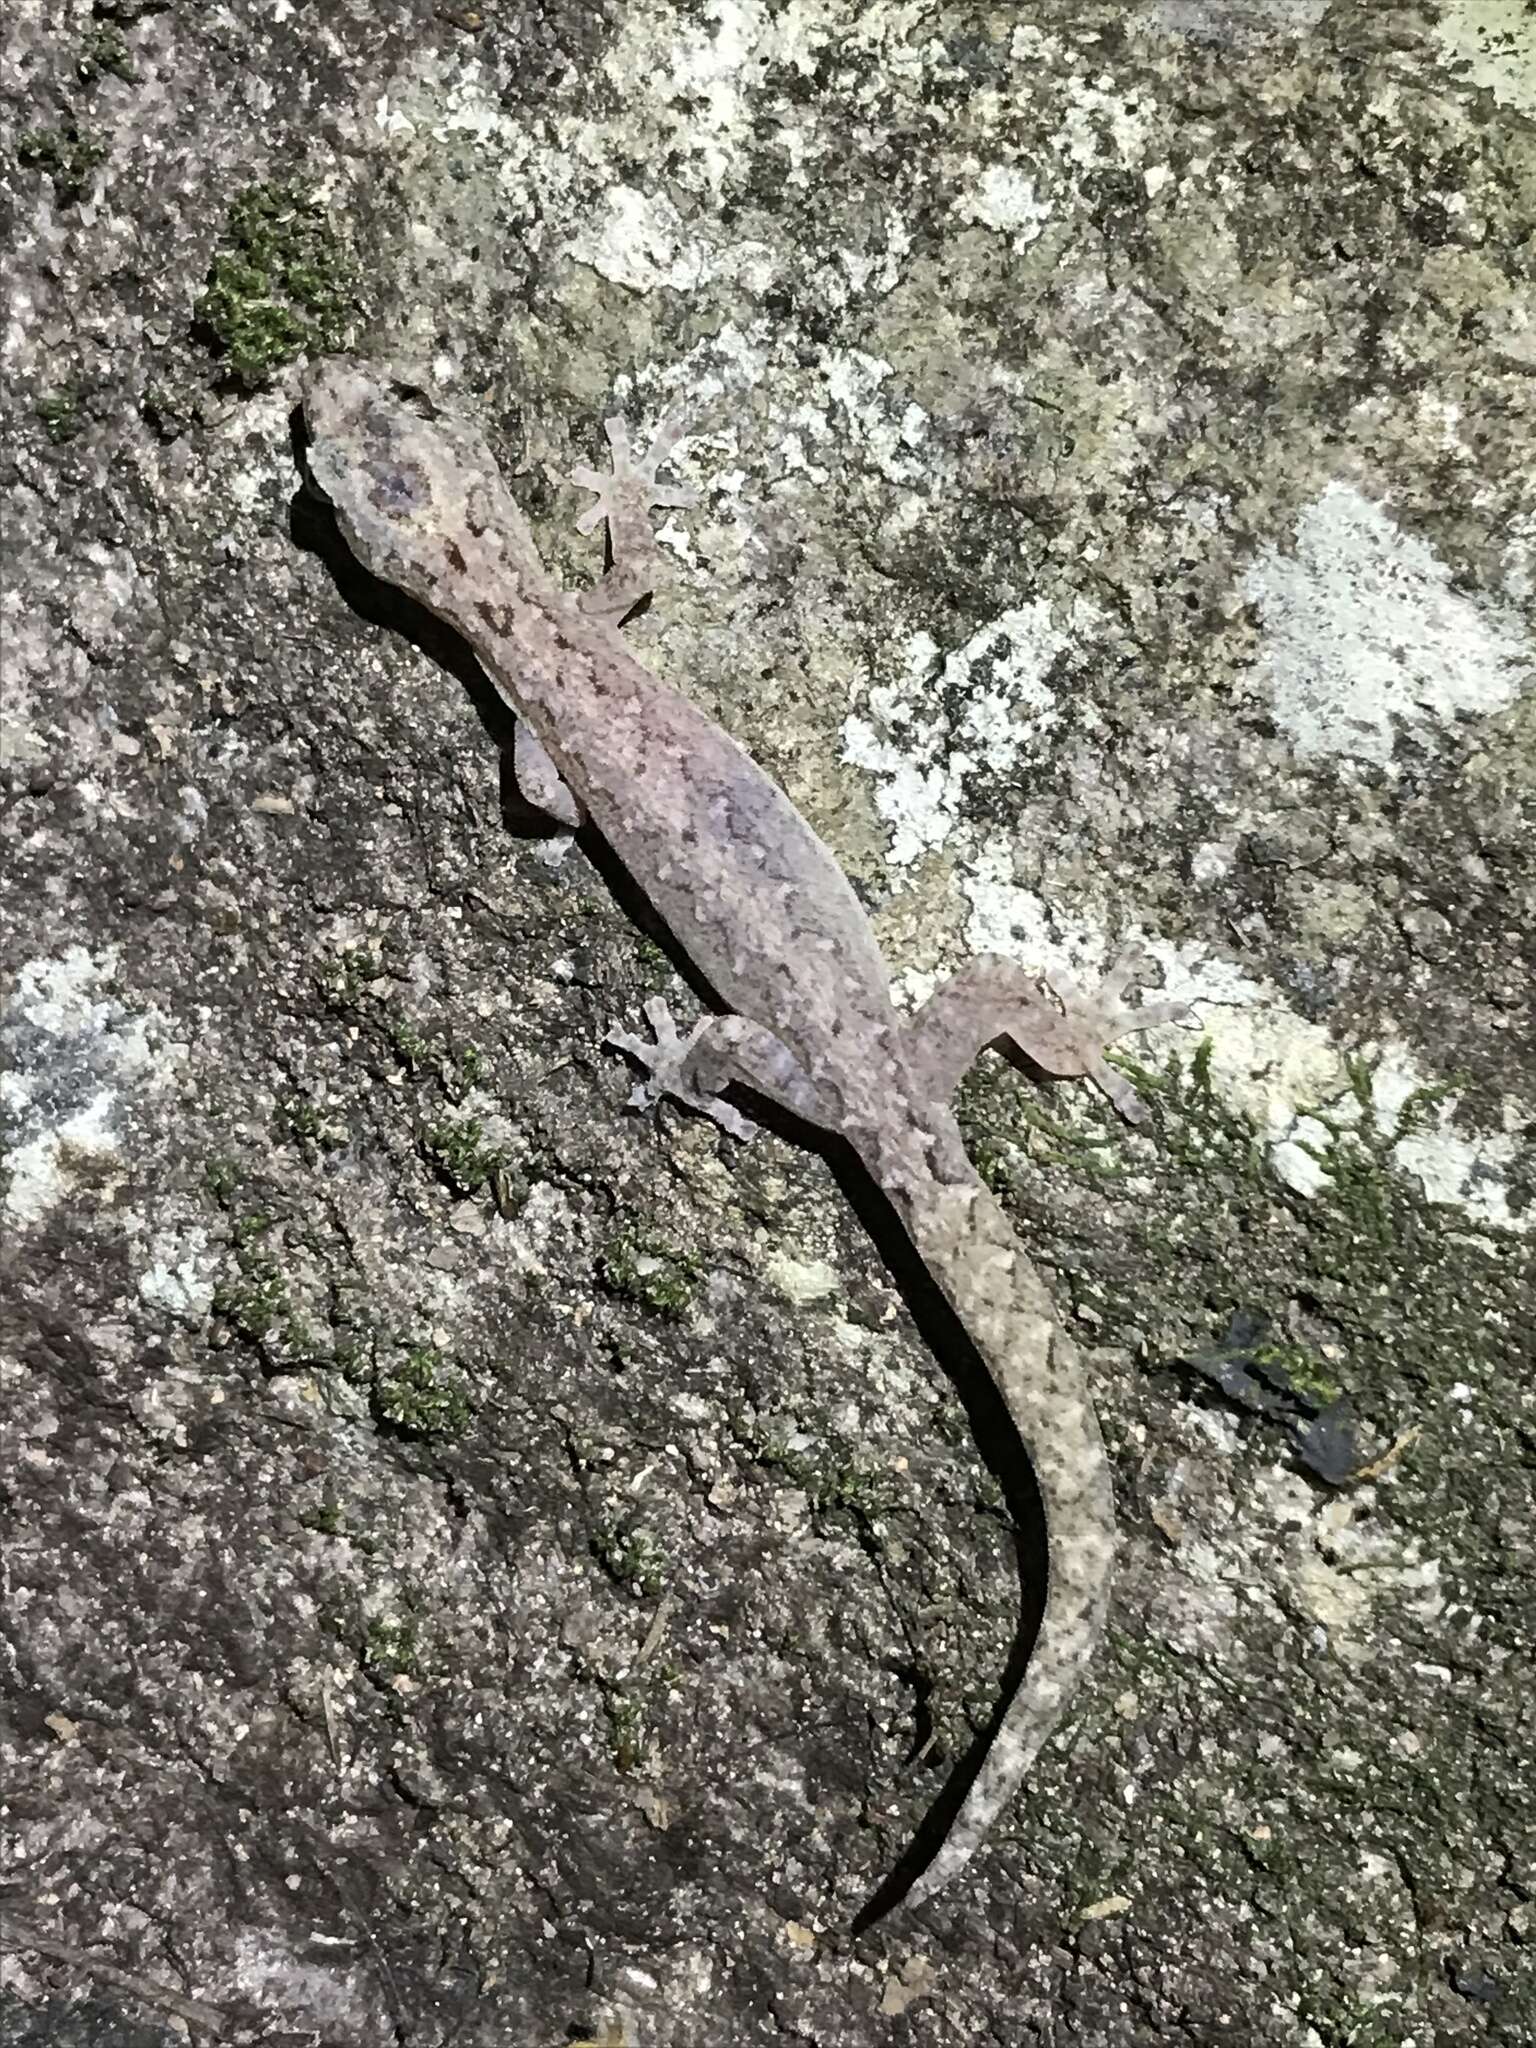 Image of Zig-zag Gecko